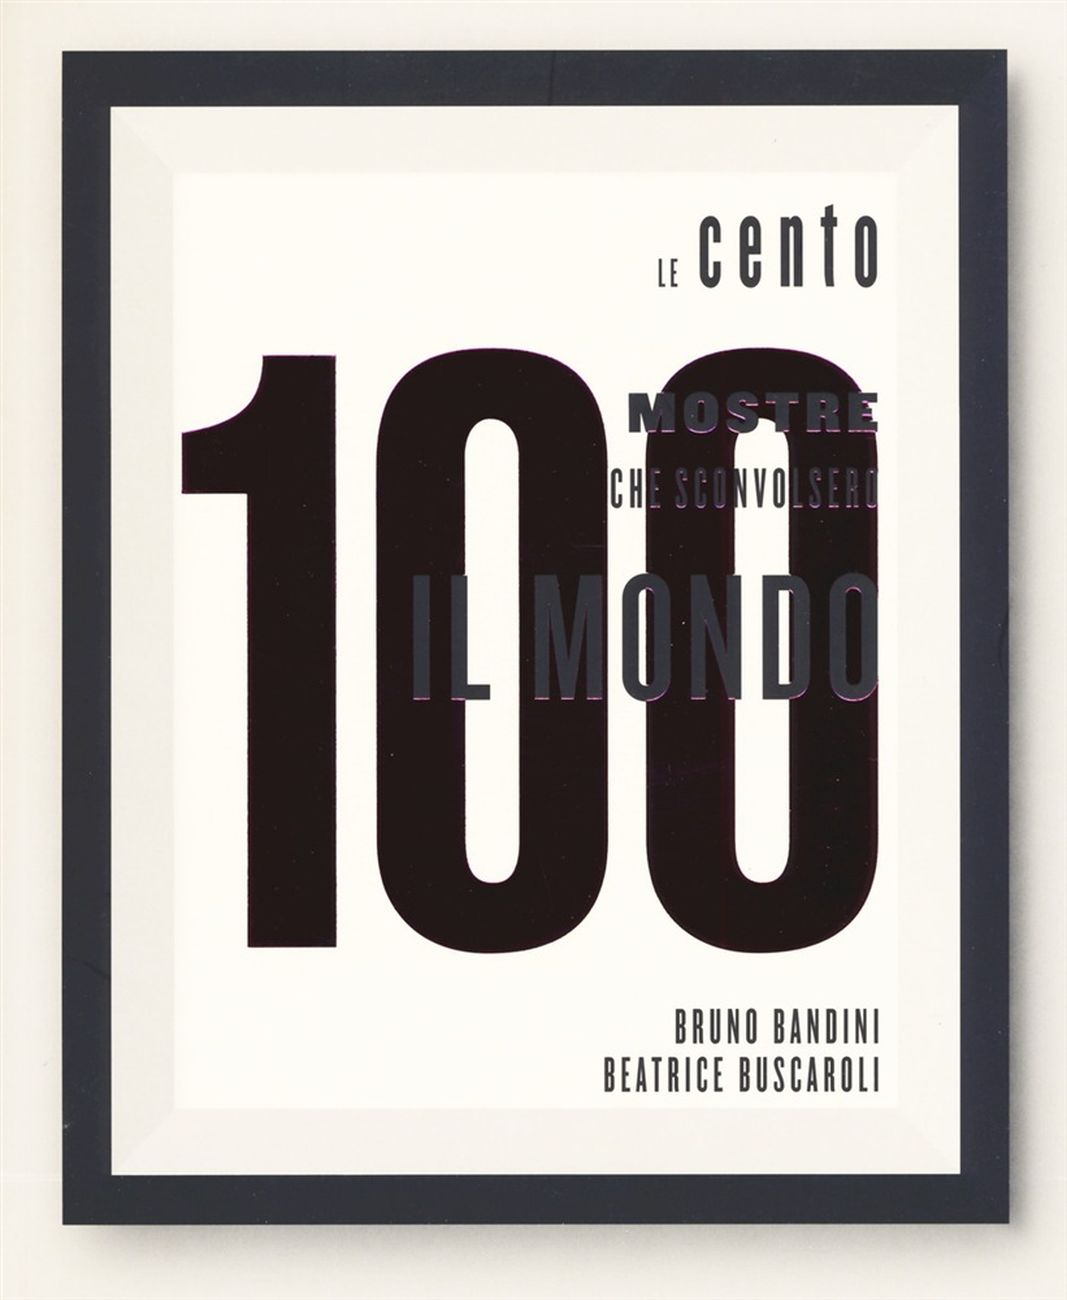 Bruno Bandini & Beatrice Buscaroli – Le 100 mostre che sconvolsero il mondo (24 Ore Cultura, Milano 2019)